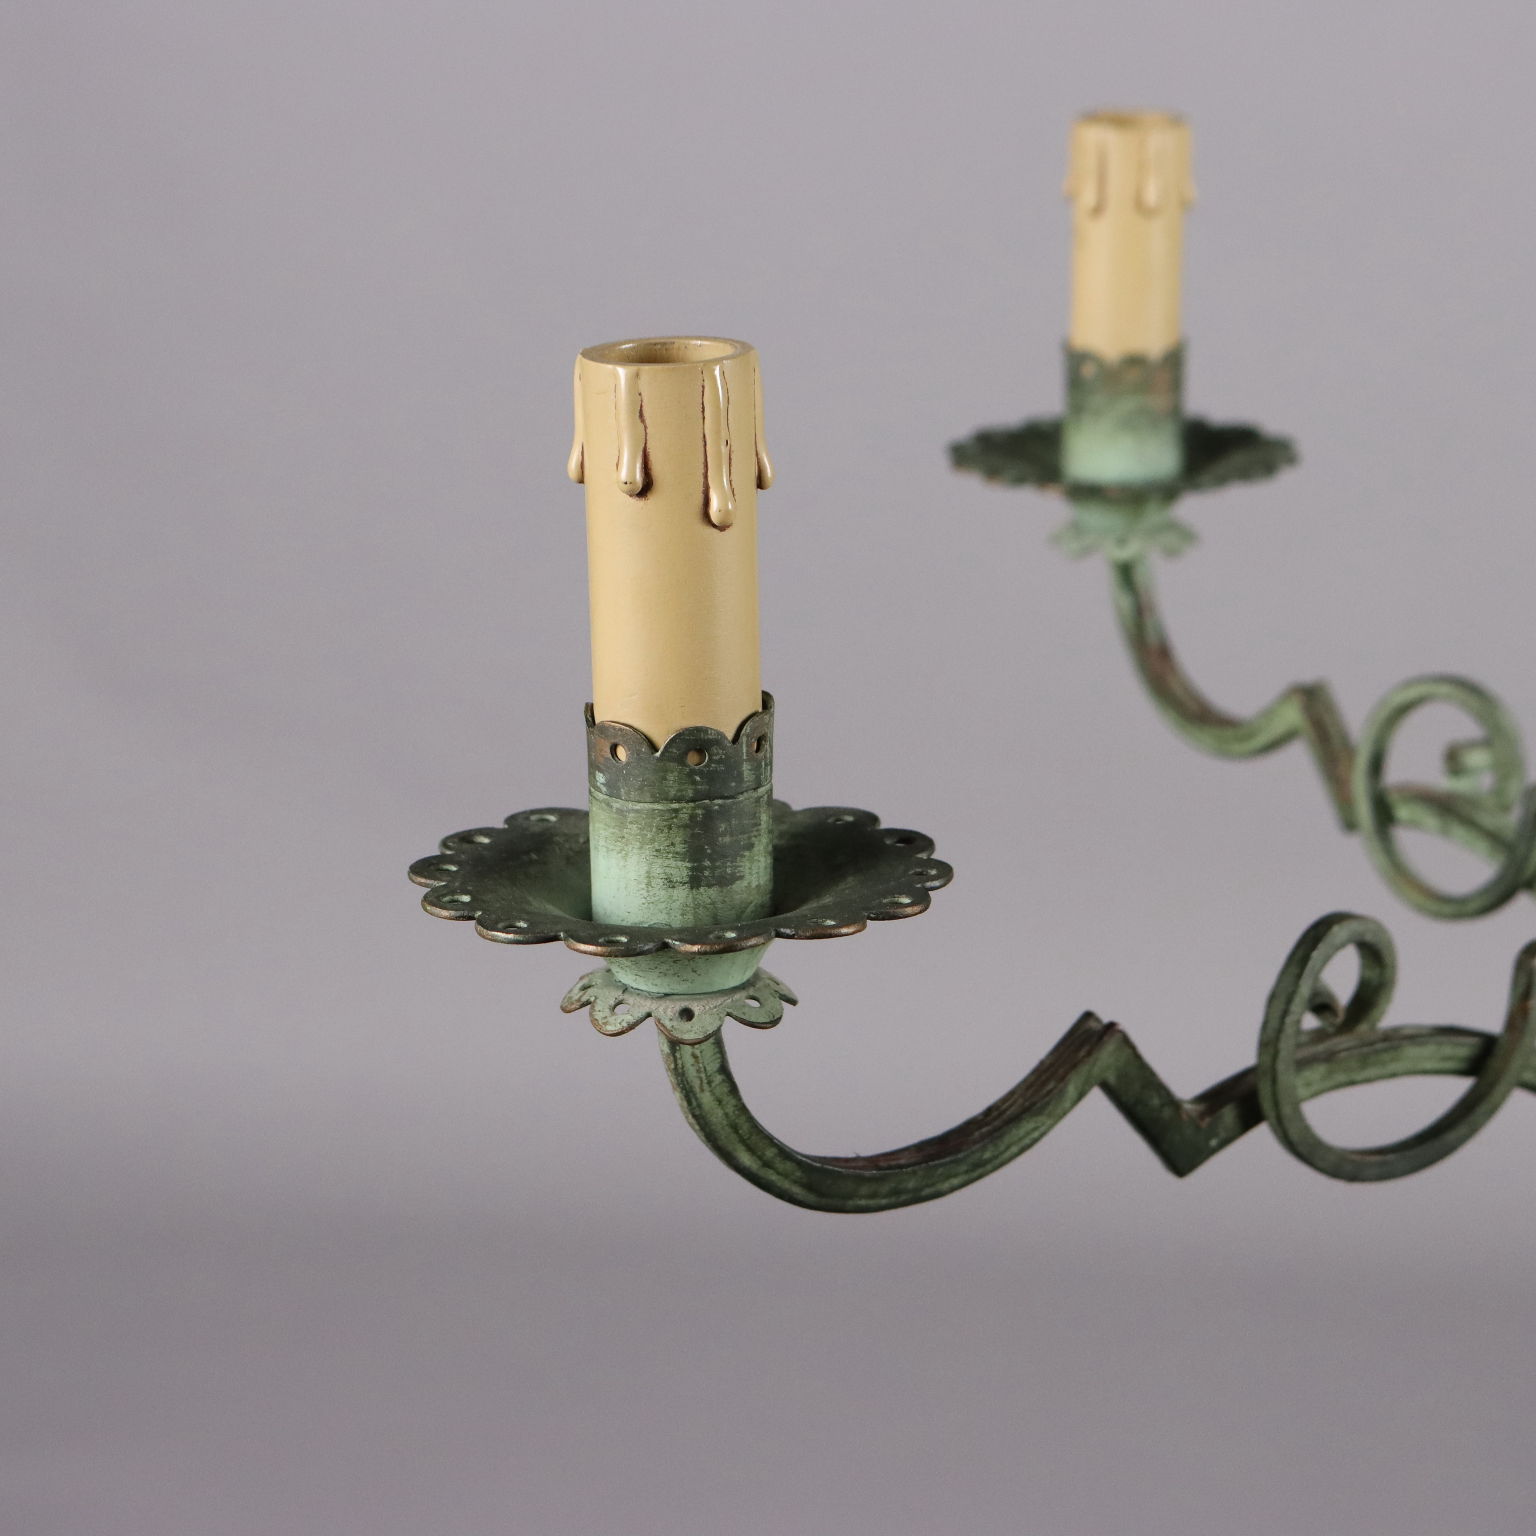 Antique Art Nouveau Chandelier Painted Brass Italy XIX-XX Century